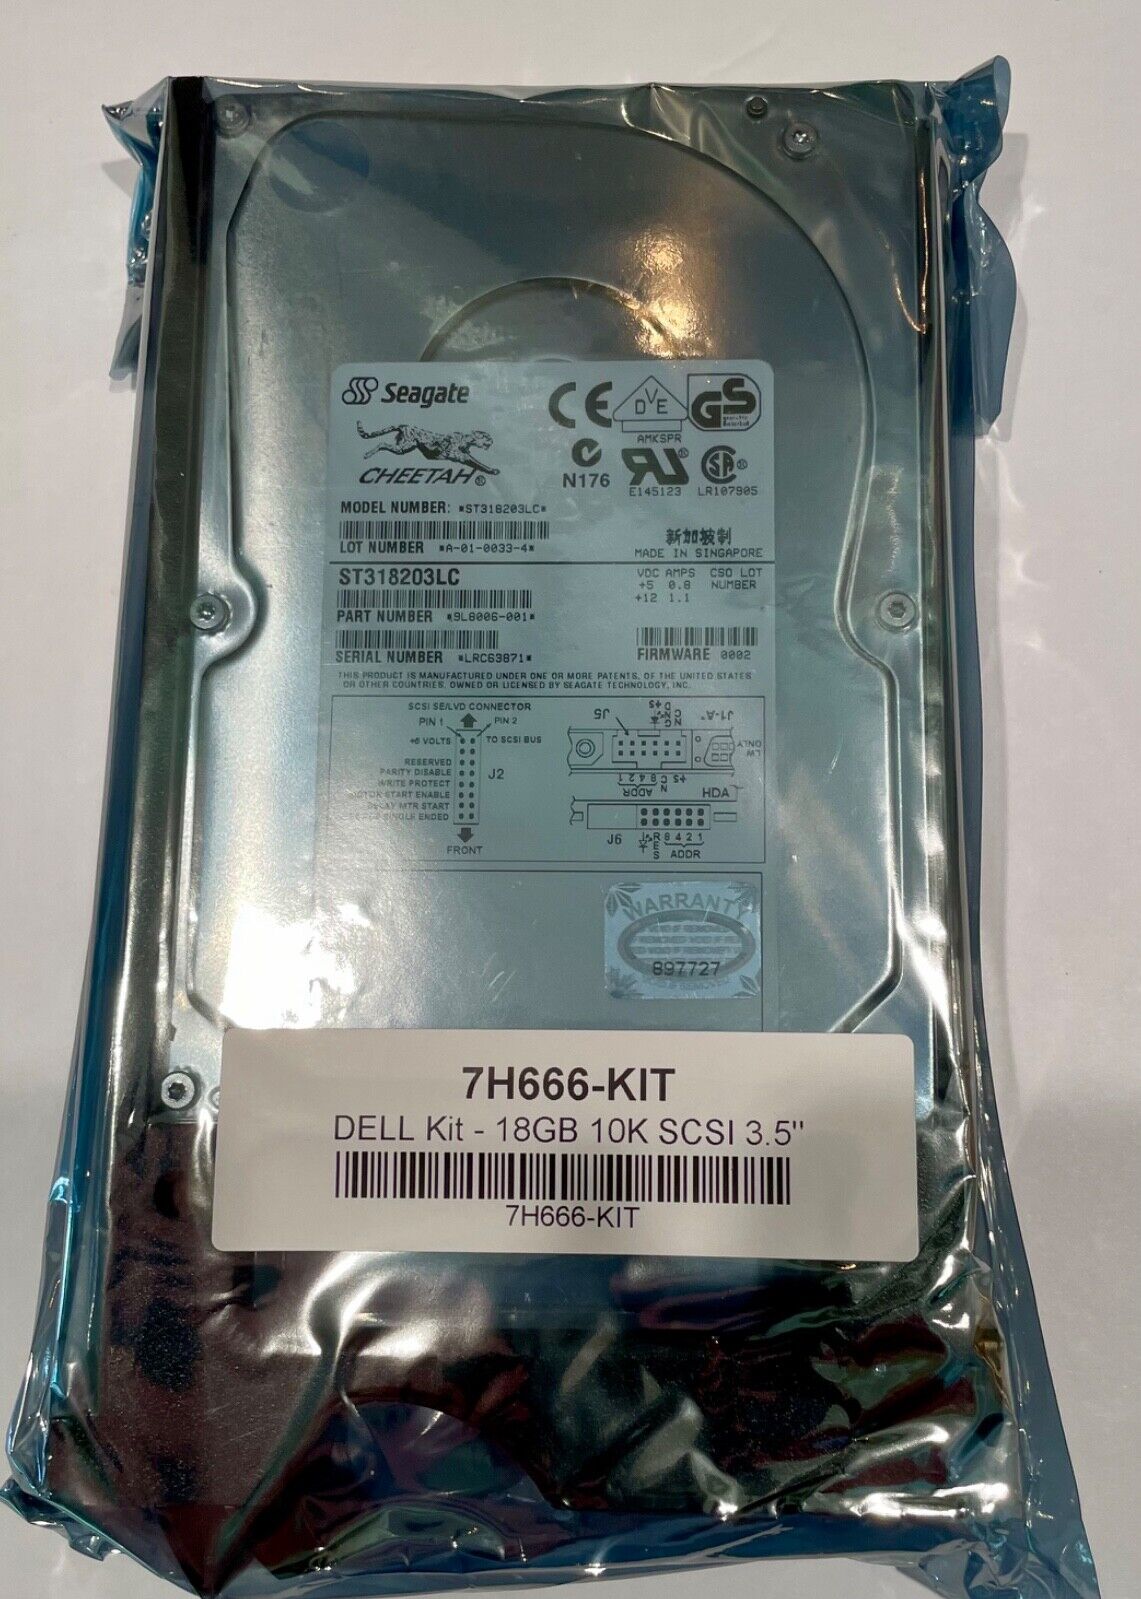 HARD DRIVE 18GB 10K 3.5 SCSI Seagate 7H666-Kit (New) DELL Compatible